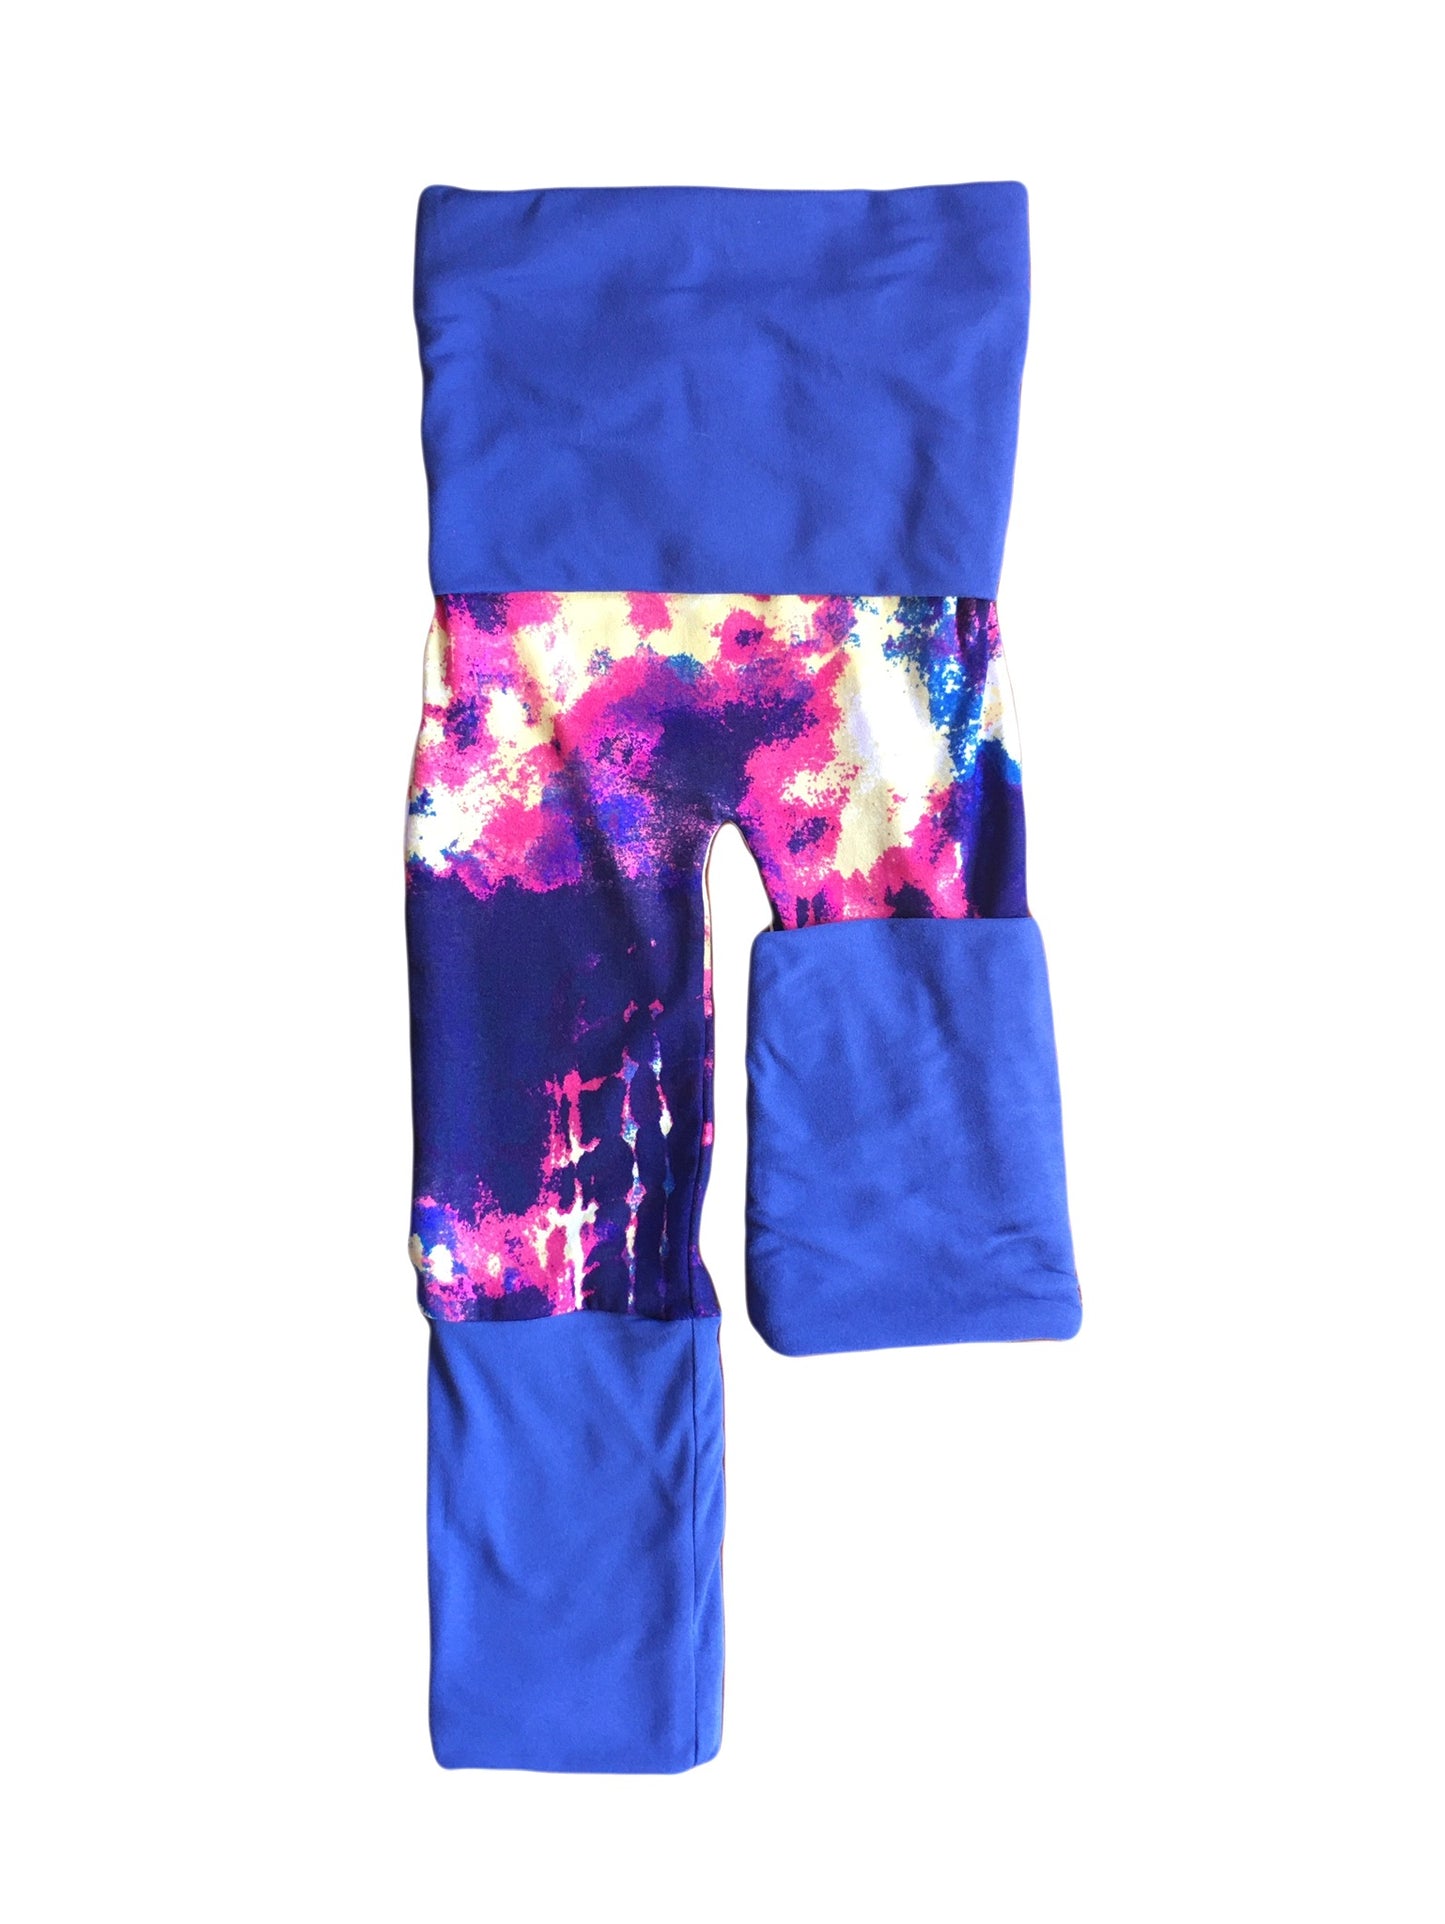 Adjustable Pants - Tie-Dye with Dark Blue